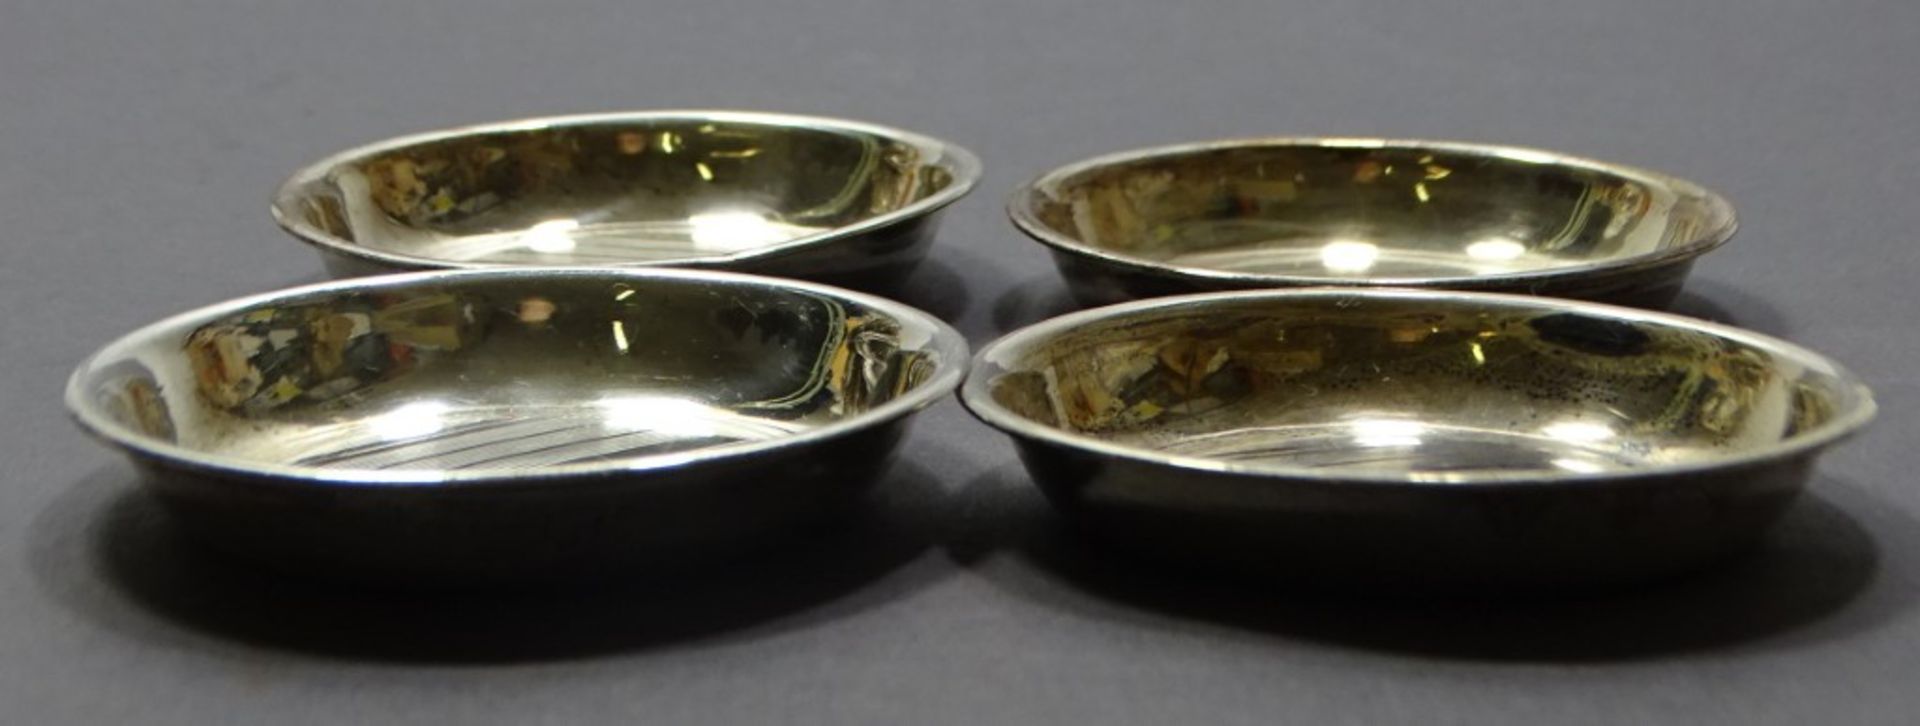 4 Silberuntersetzer oder Ähnliches, Sterling, 6,5 cm, H. 1 cm, zus. 53 gr., kleine Kratzer, reinign - Bild 3 aus 4